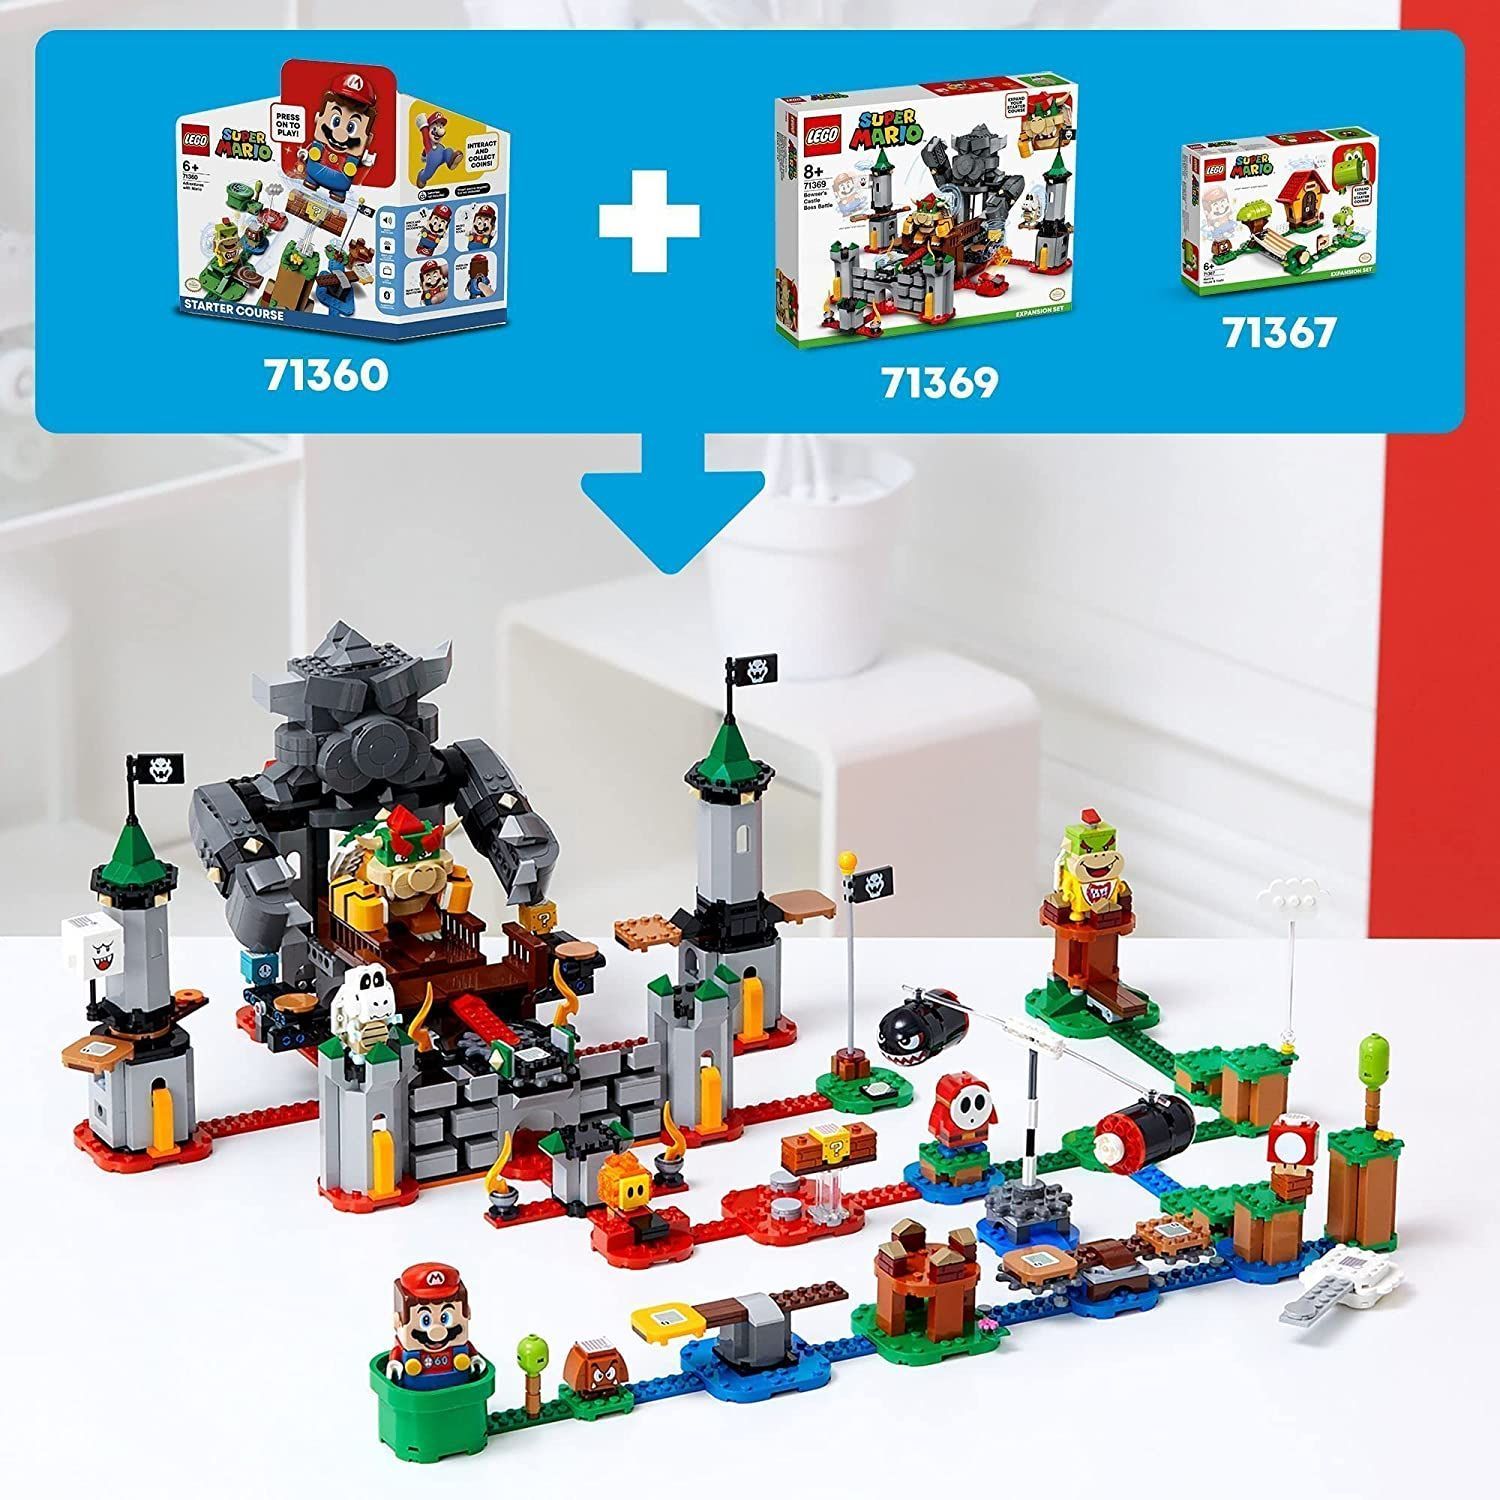 レゴ(LEGO) スーパーマリオ けっせんクッパ城! チャレンジ 71369 - TOY